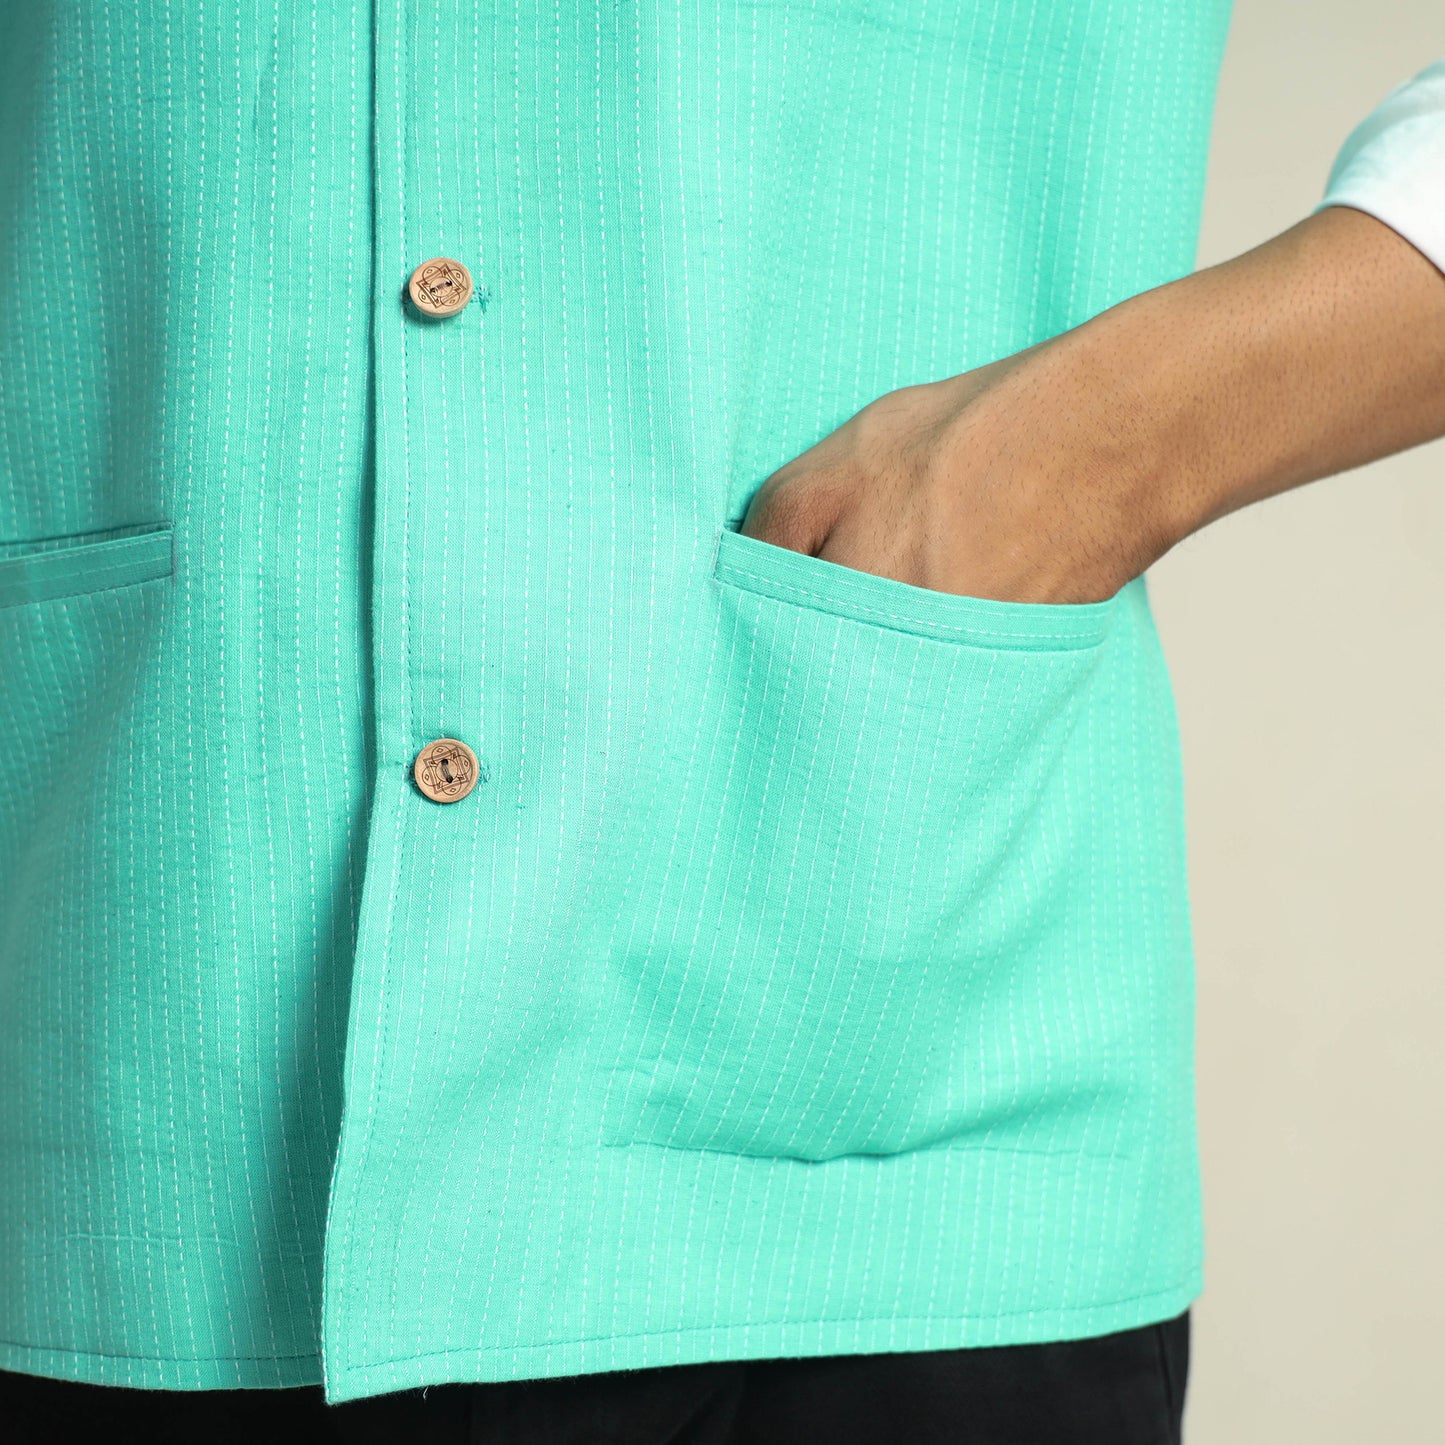 Green - Running Stitch Pure Cotton Men Nehru Jacket 14